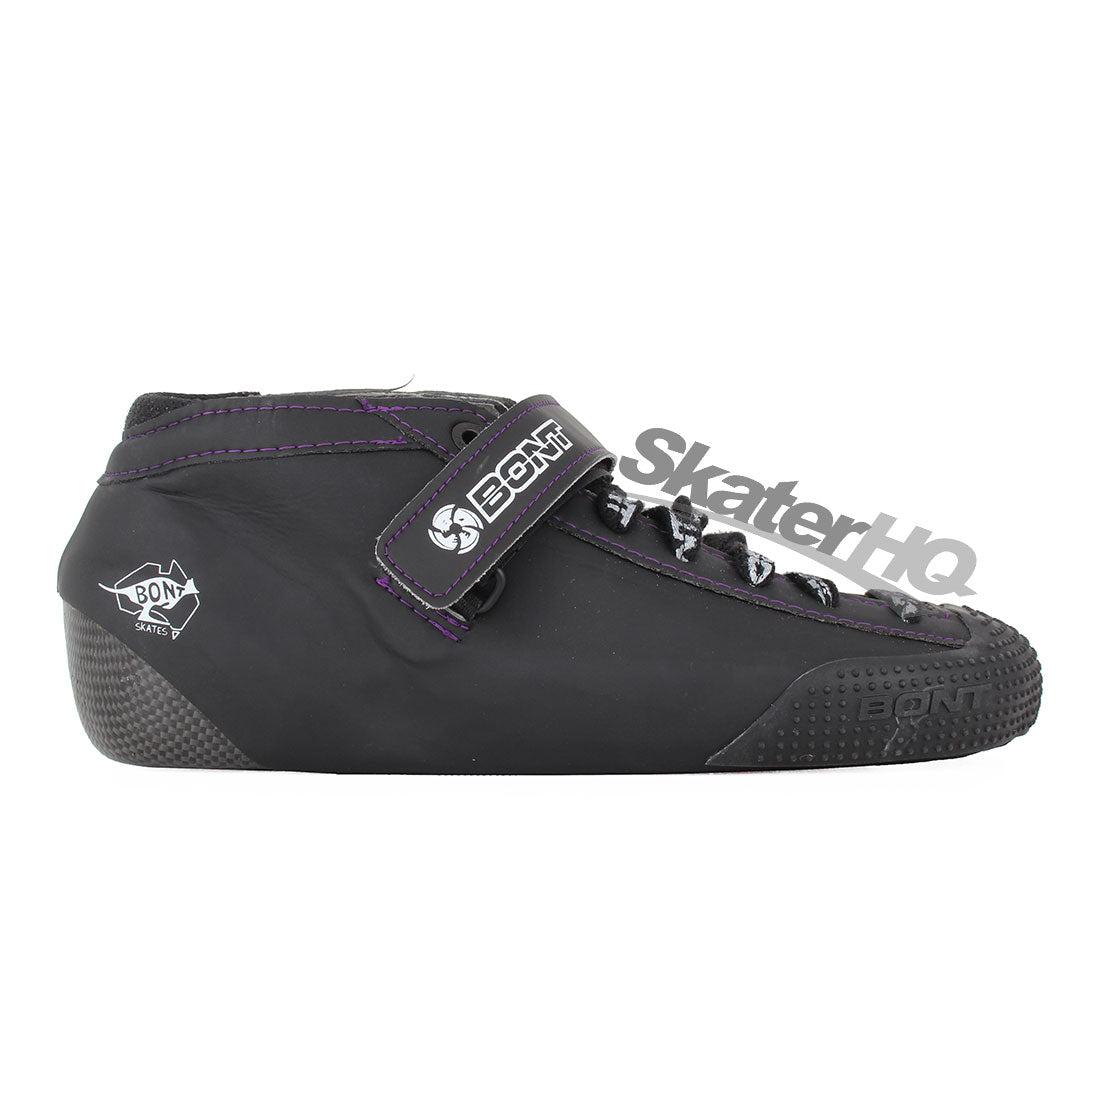 Bont Hybrid V2 Carbon Durolite Boot - Black/Purple Stitching Roller Skate Boots